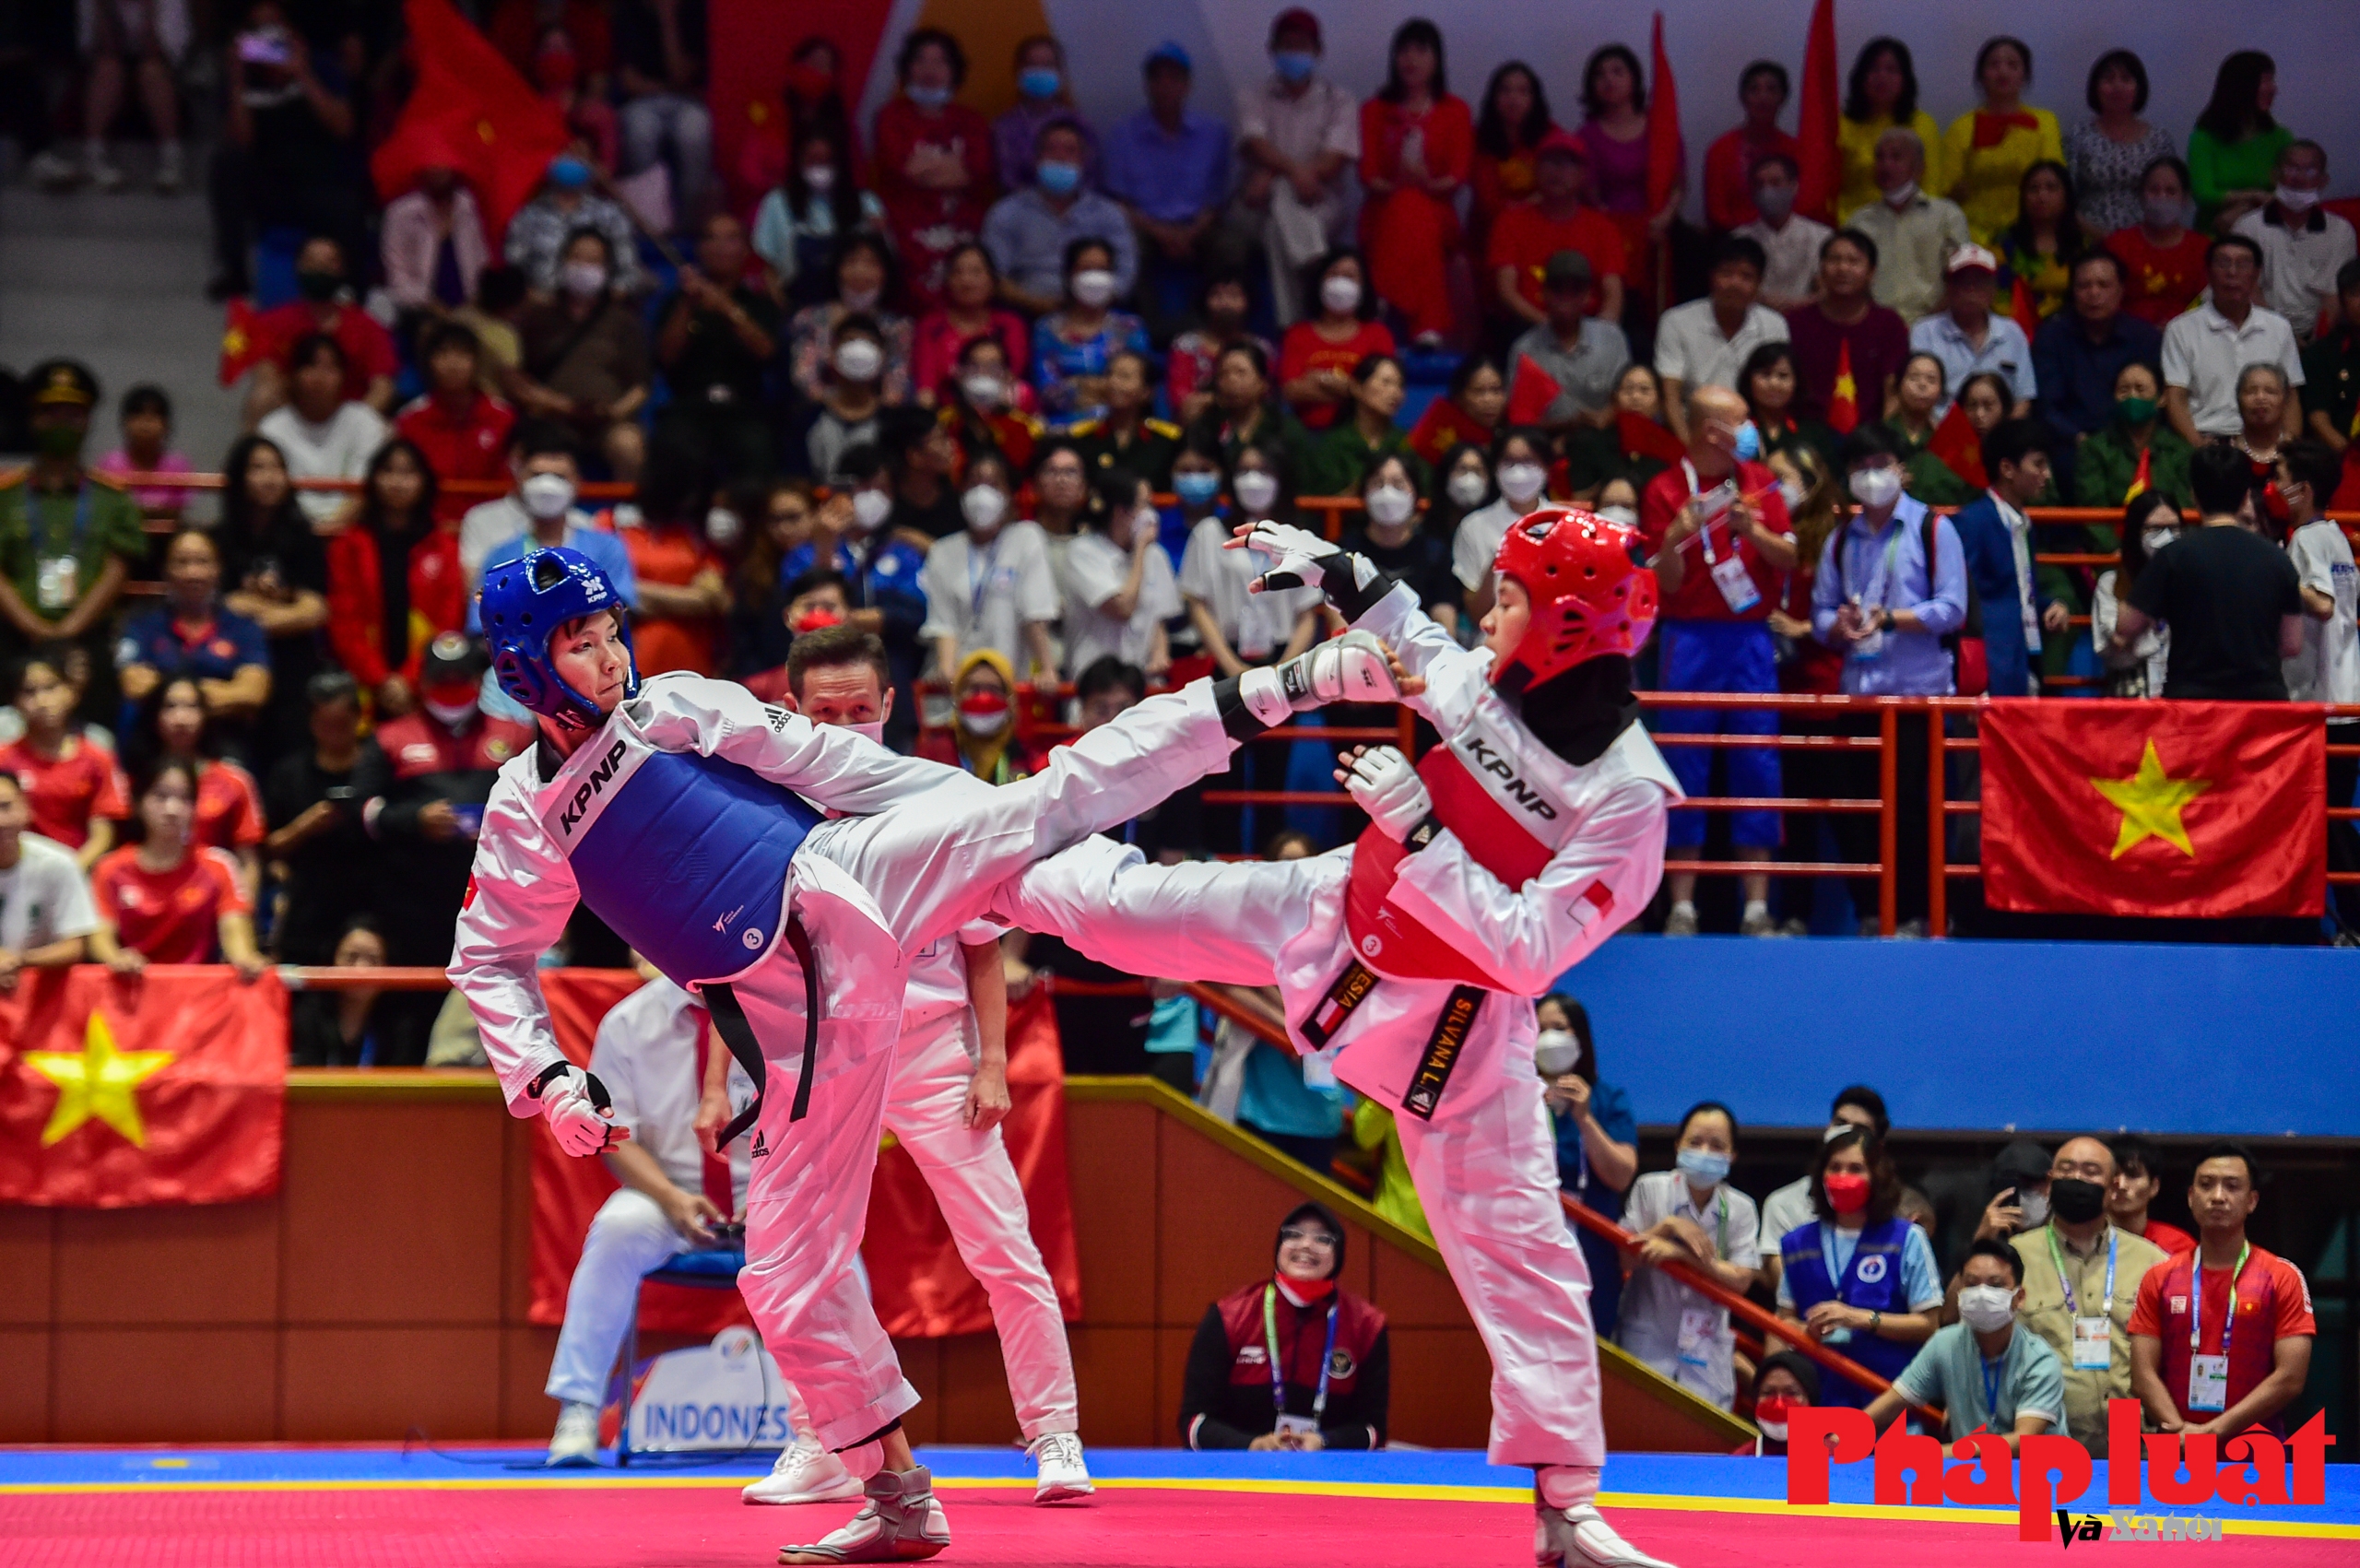 Hai cô gái vàng Taekwondo đối kháng mở hàng vàng